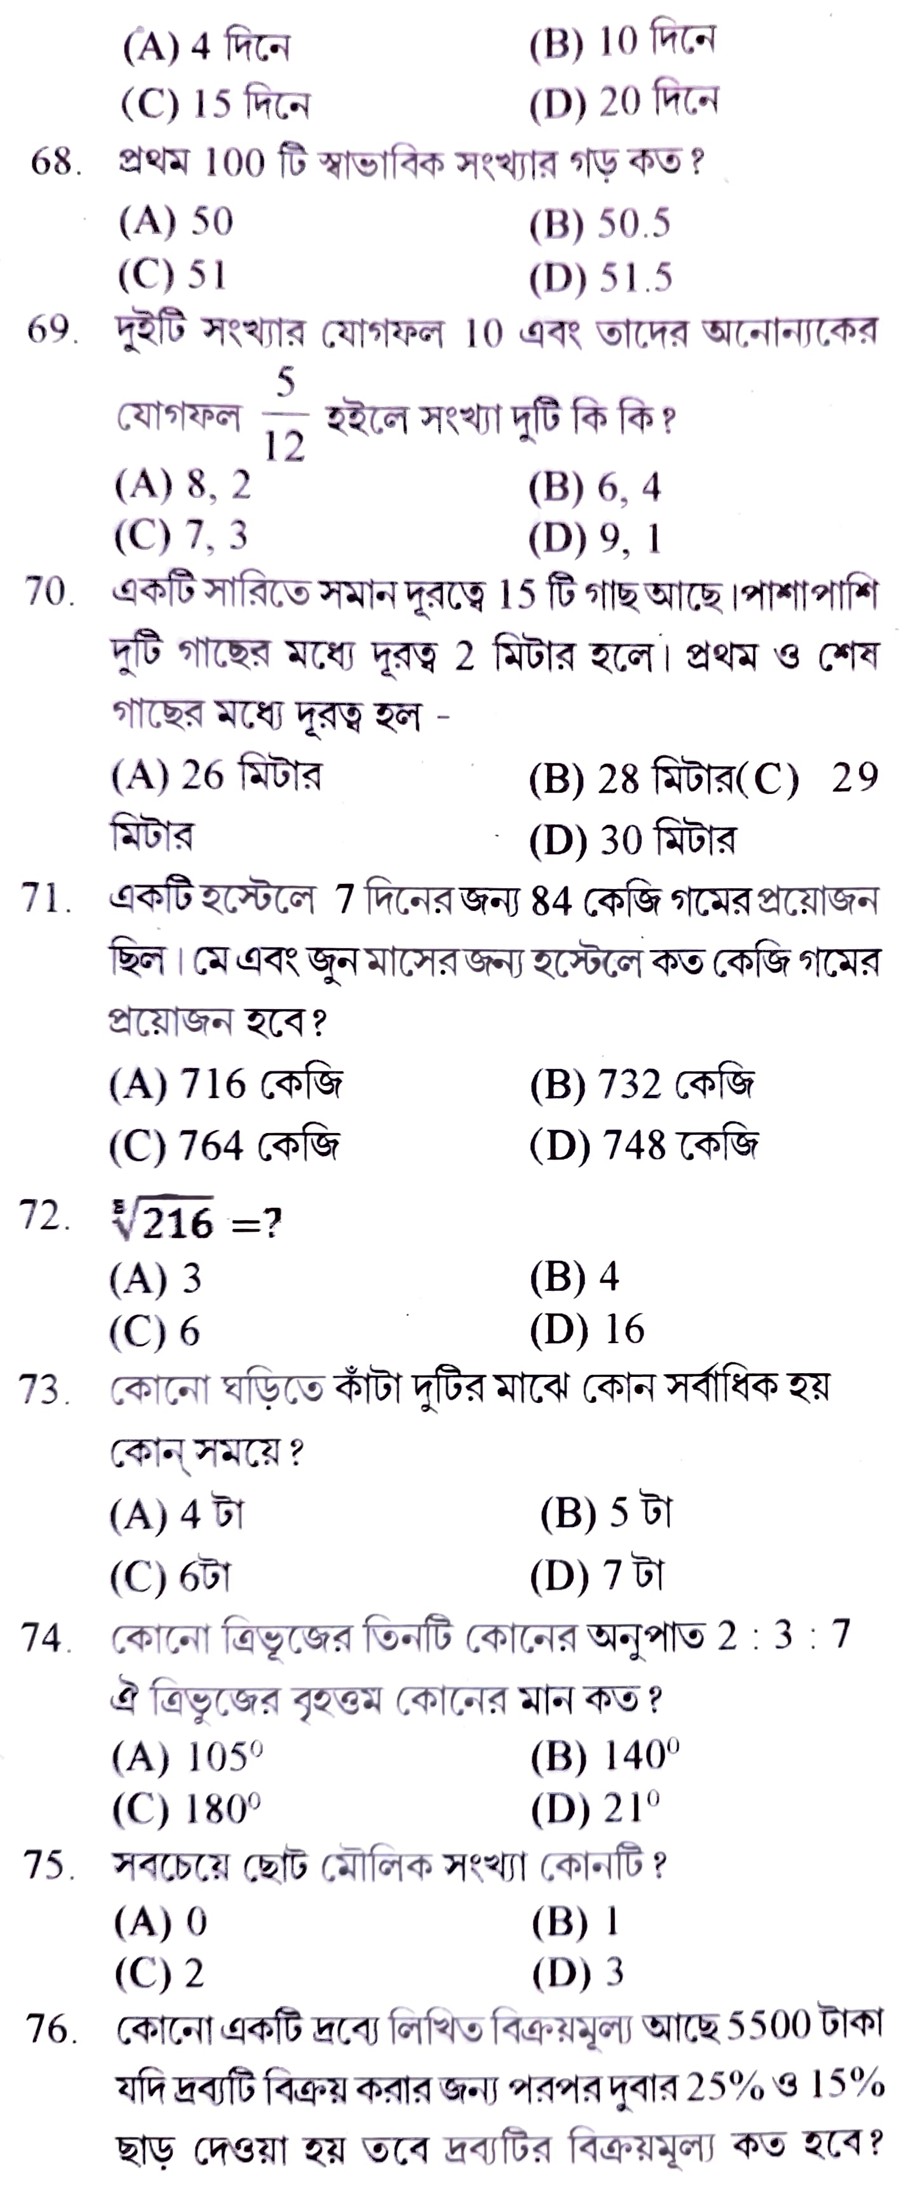 ফুড সাব ইন্সপেক্টর  টি জেনারেল স্টাডিজ ও ৫০ টি অ্যারিথমেটিক প্রাকটিস সেট পিডিএফ ||Food SI General Studies and Arithmetic Practice Set Pdf in Bengali